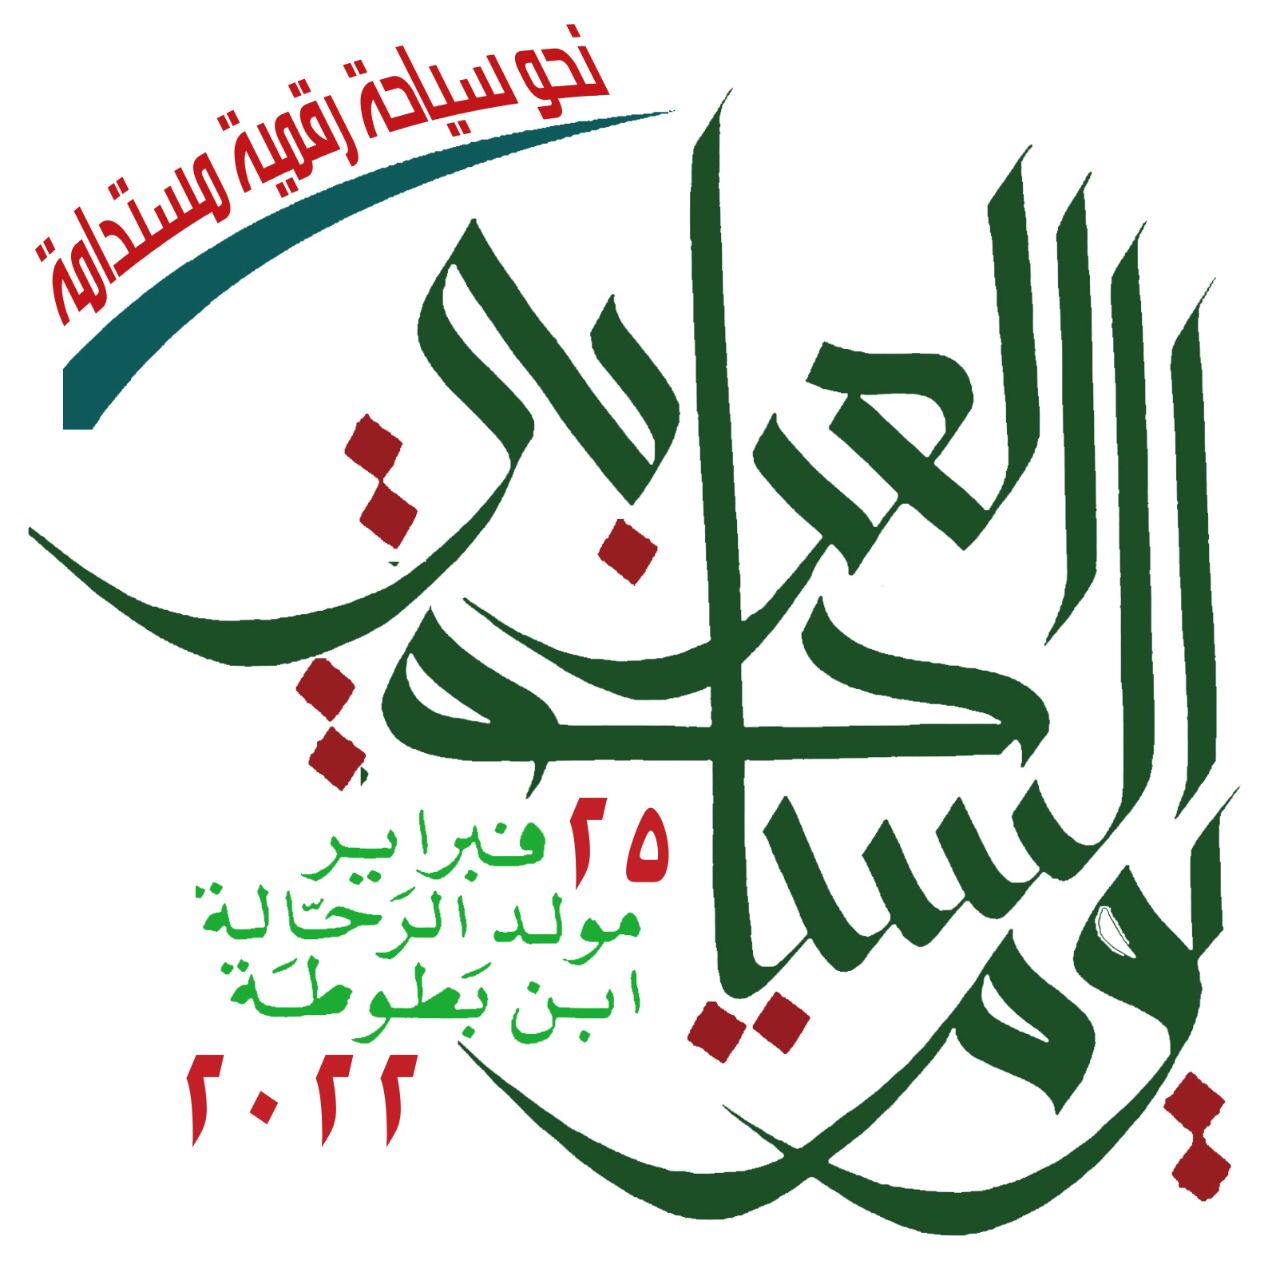 المنظمة العربية للسياحة تدعو العالم العربي للاحتفال بيوم السياحة العربي بتاريخ 25 فبراير